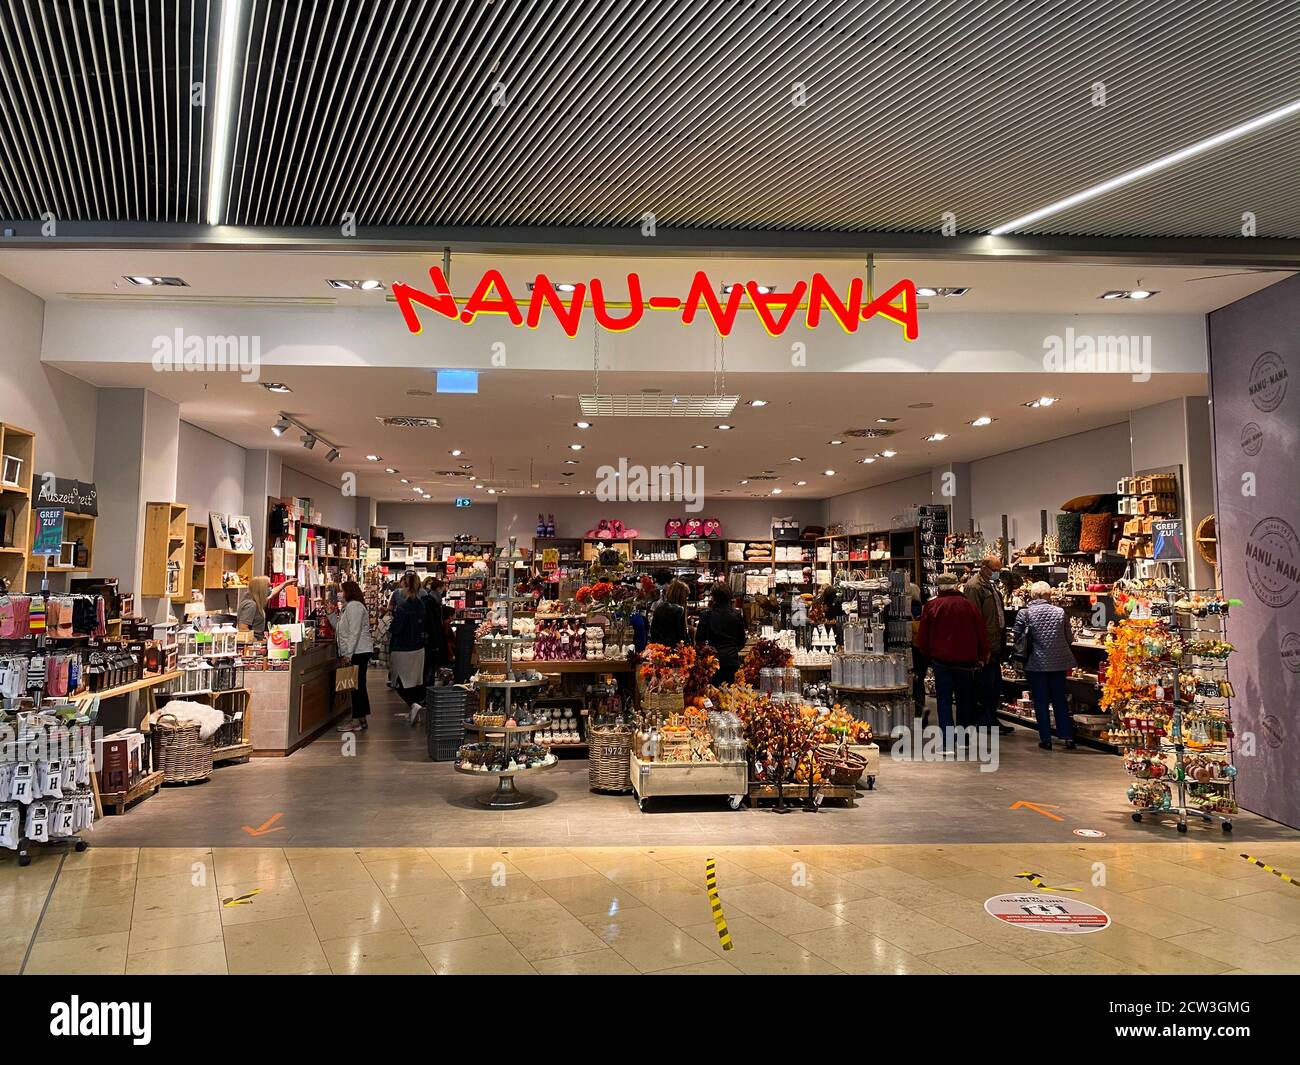 Nanu nana hi-res stock photography and images - Alamy